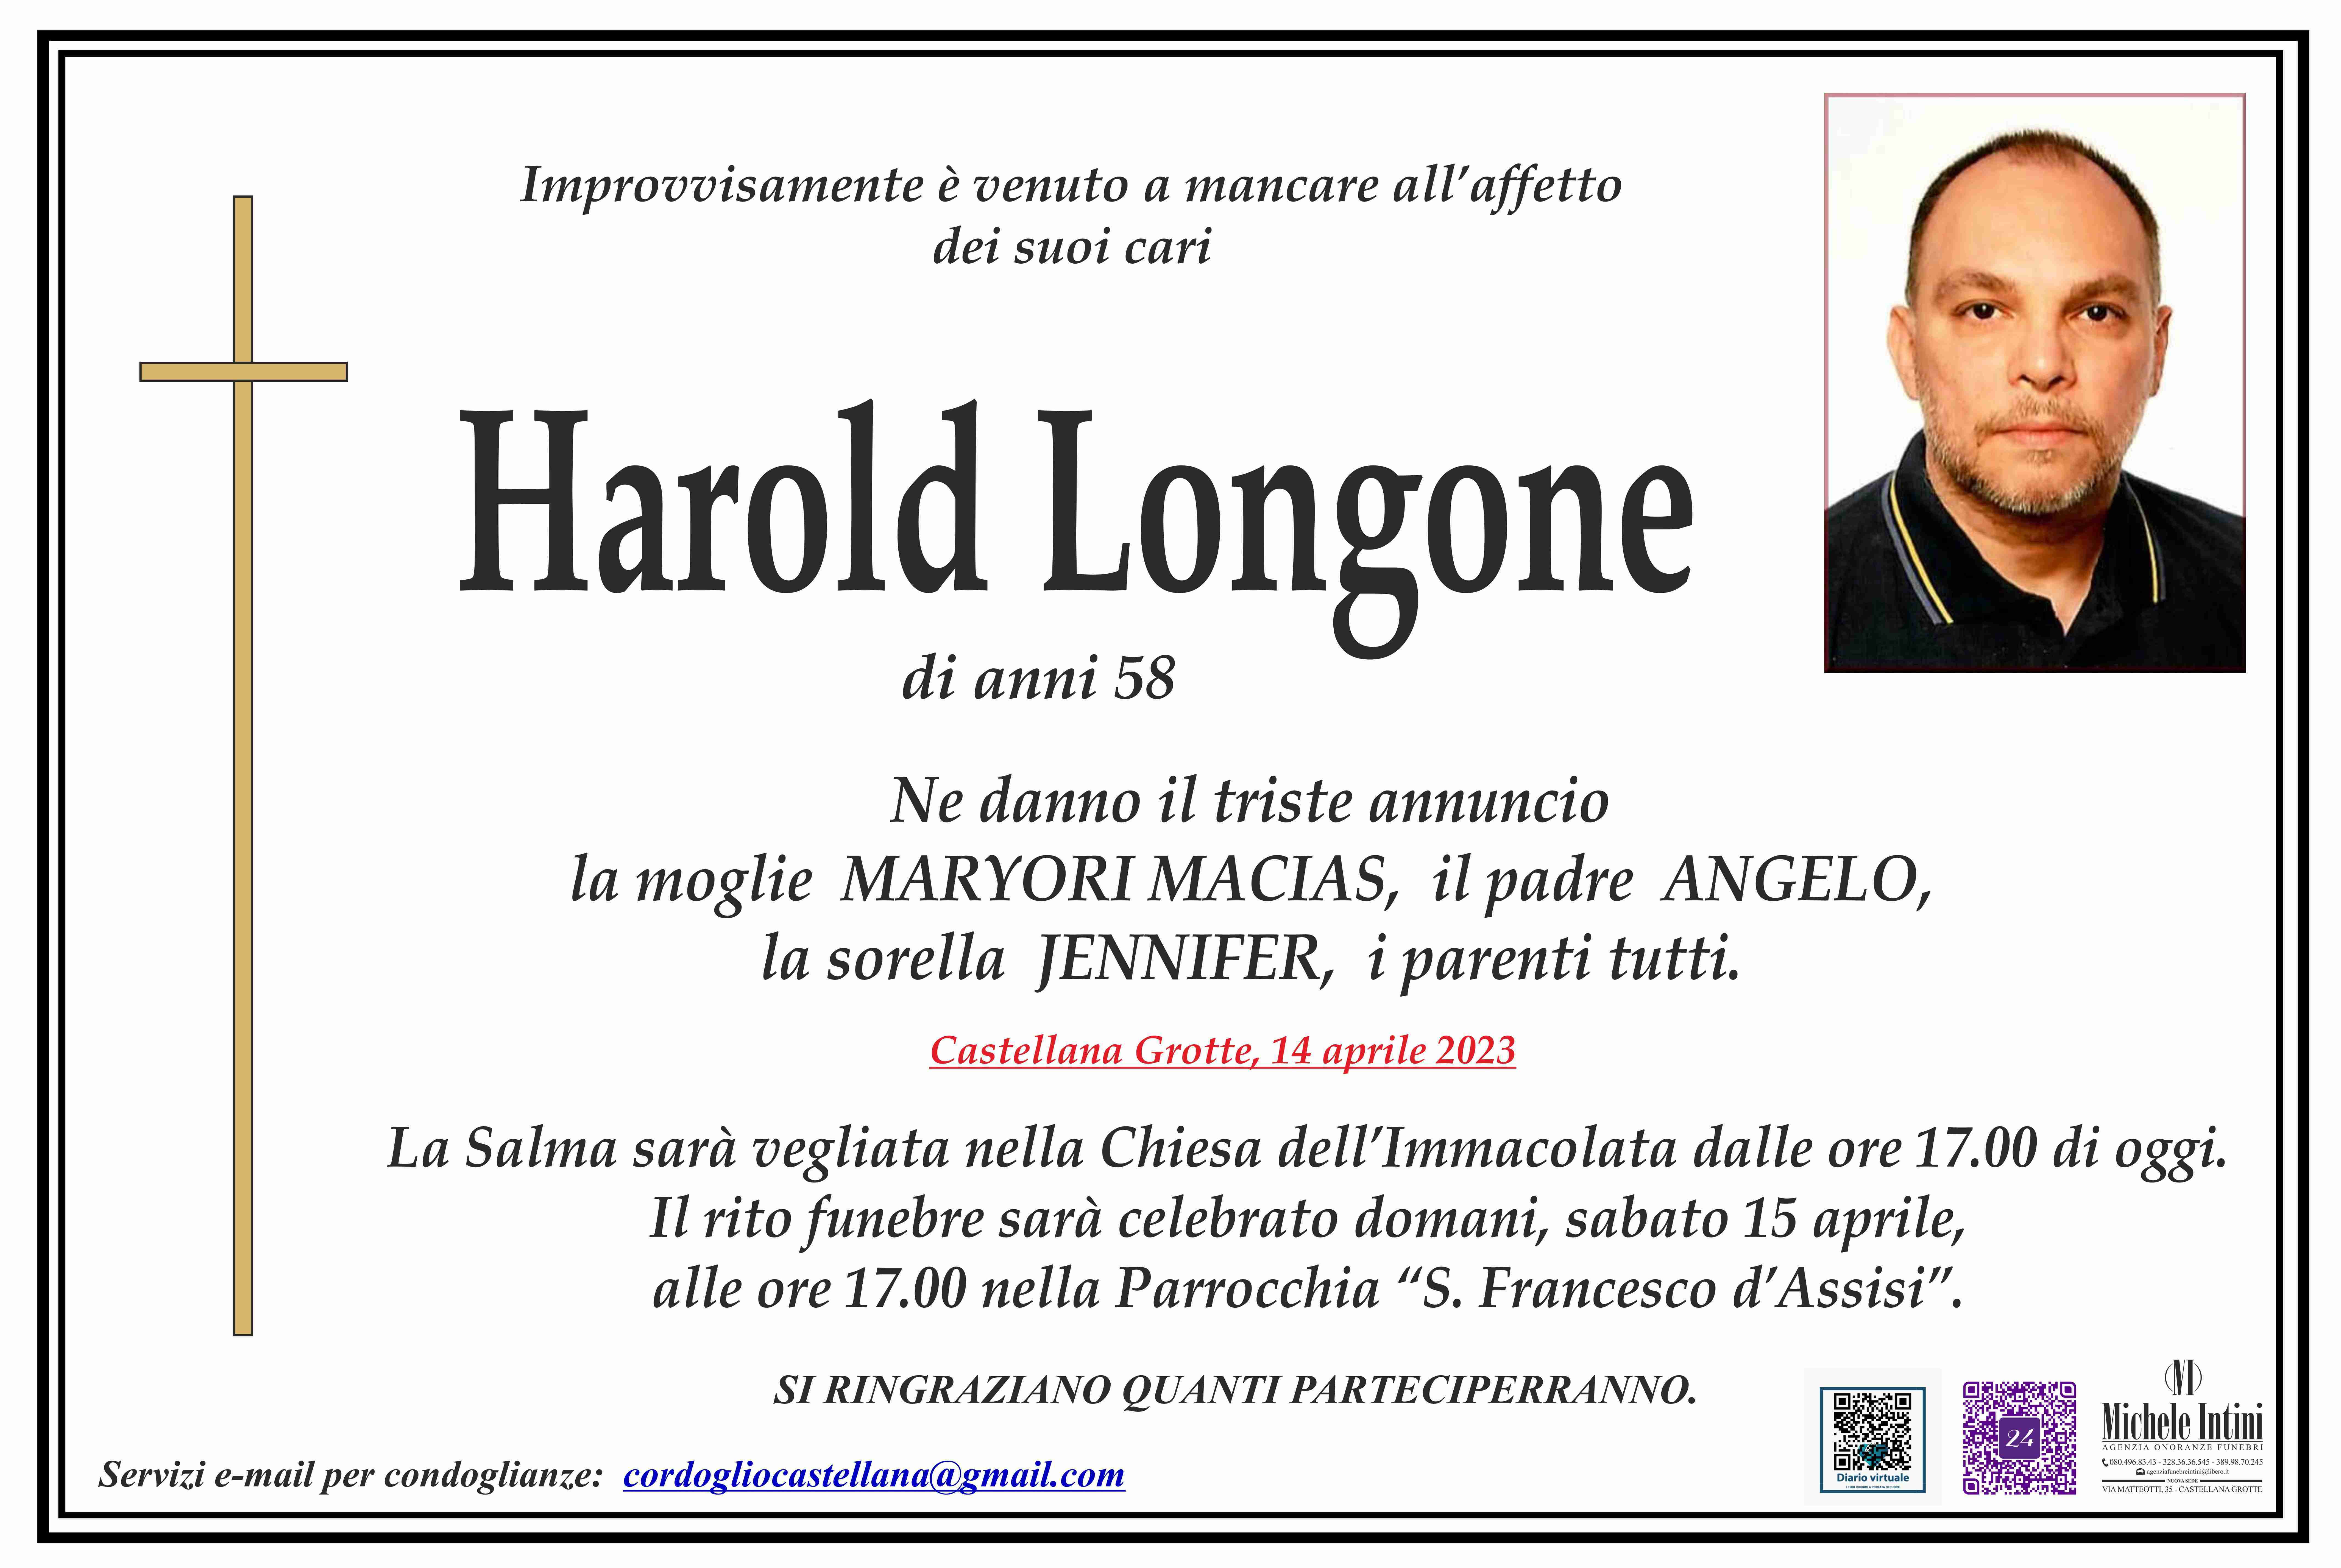 Harold Longone